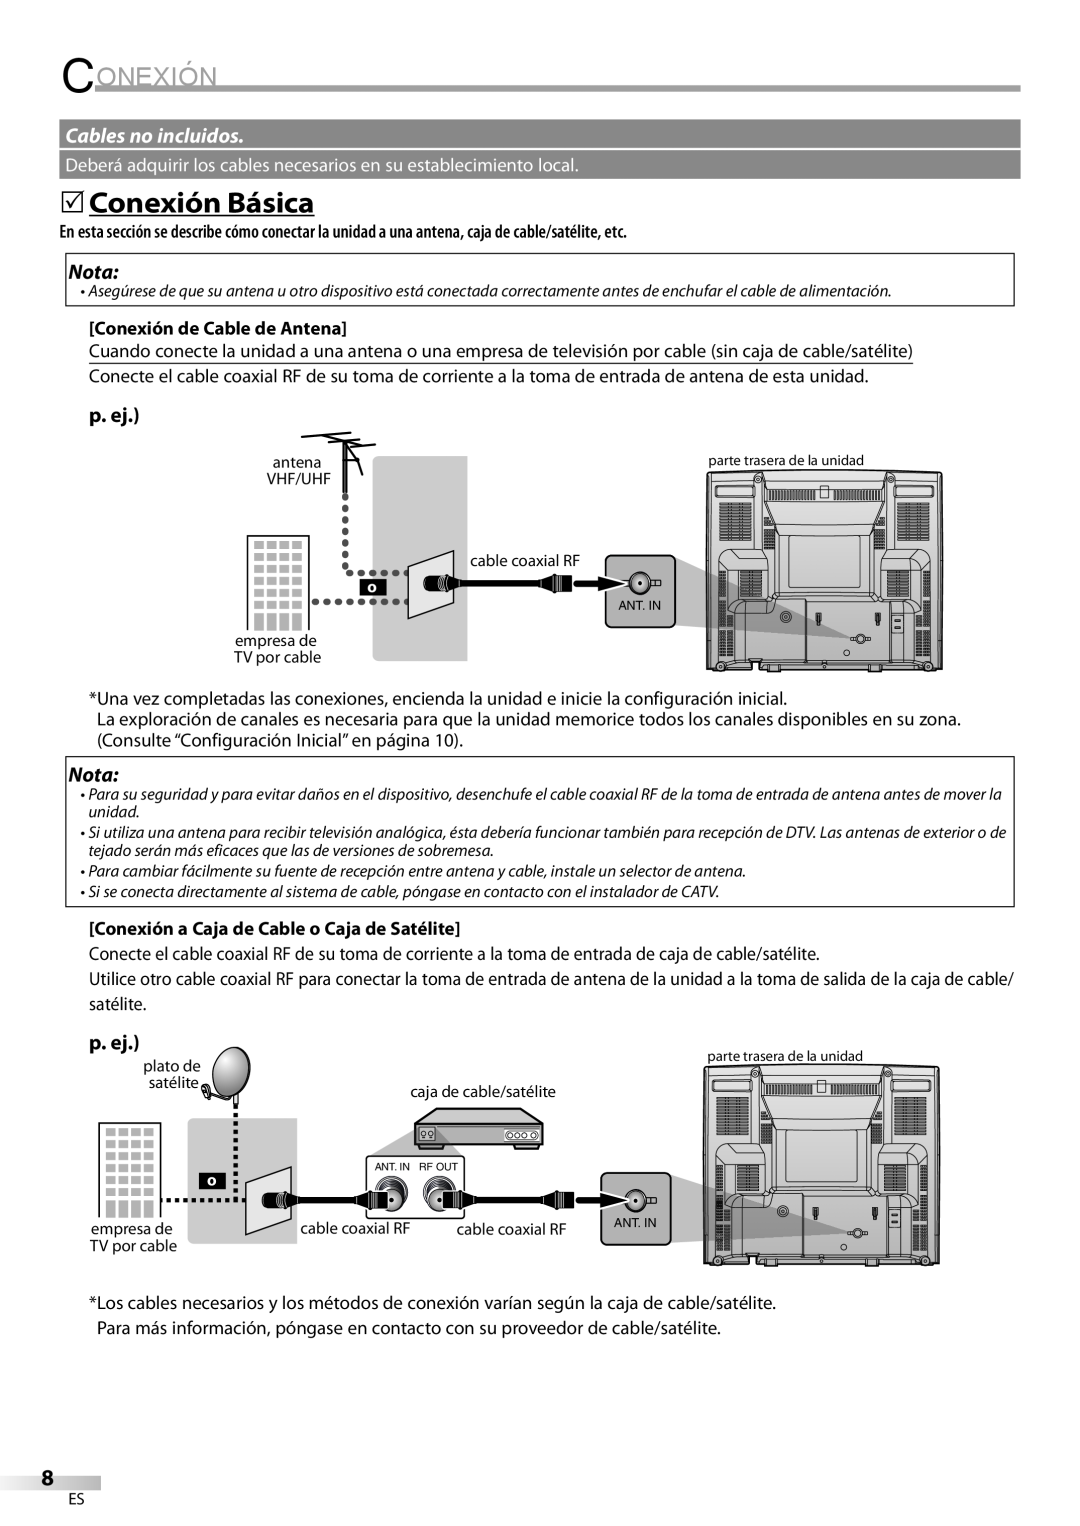 FUNAI CR130DR8 owner manual 5Conexión Básica, Cables no incluidos, Nota, p. ej, Conexión de Cable de Antena 